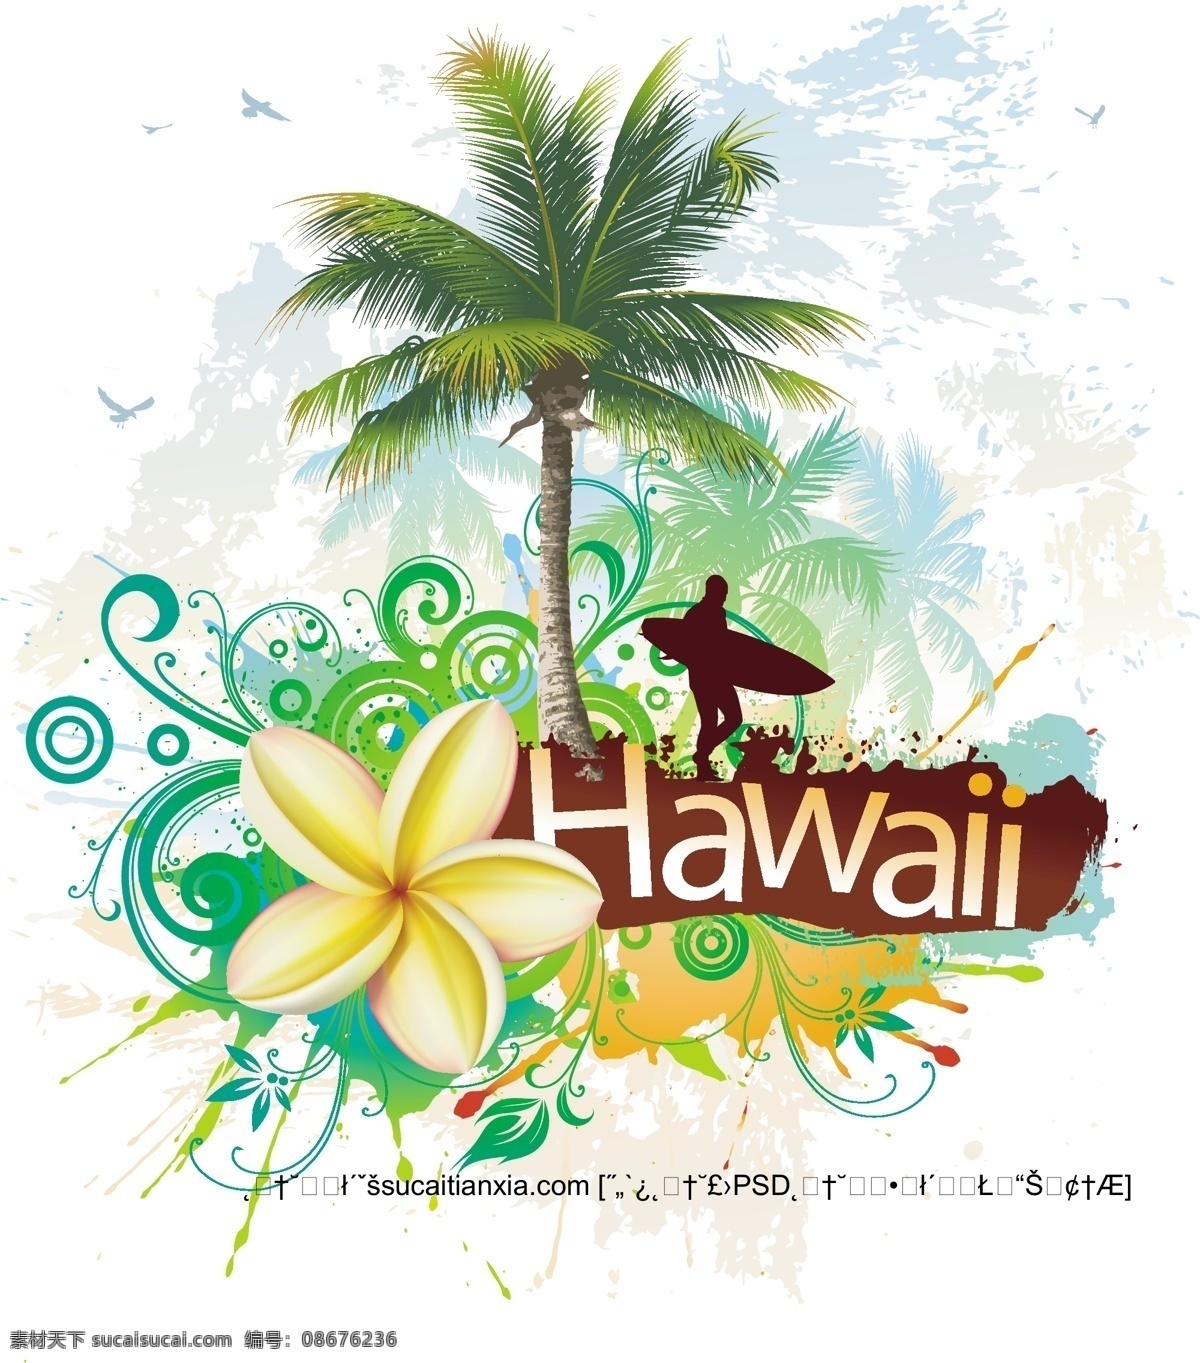 热带 天堂 夏威夷 宣传海报 矢量 素 花朵 花纹 旅游 墨迹 人物剪影 太阳 宣传 椰树 热带天堂 海报 其他海报设计